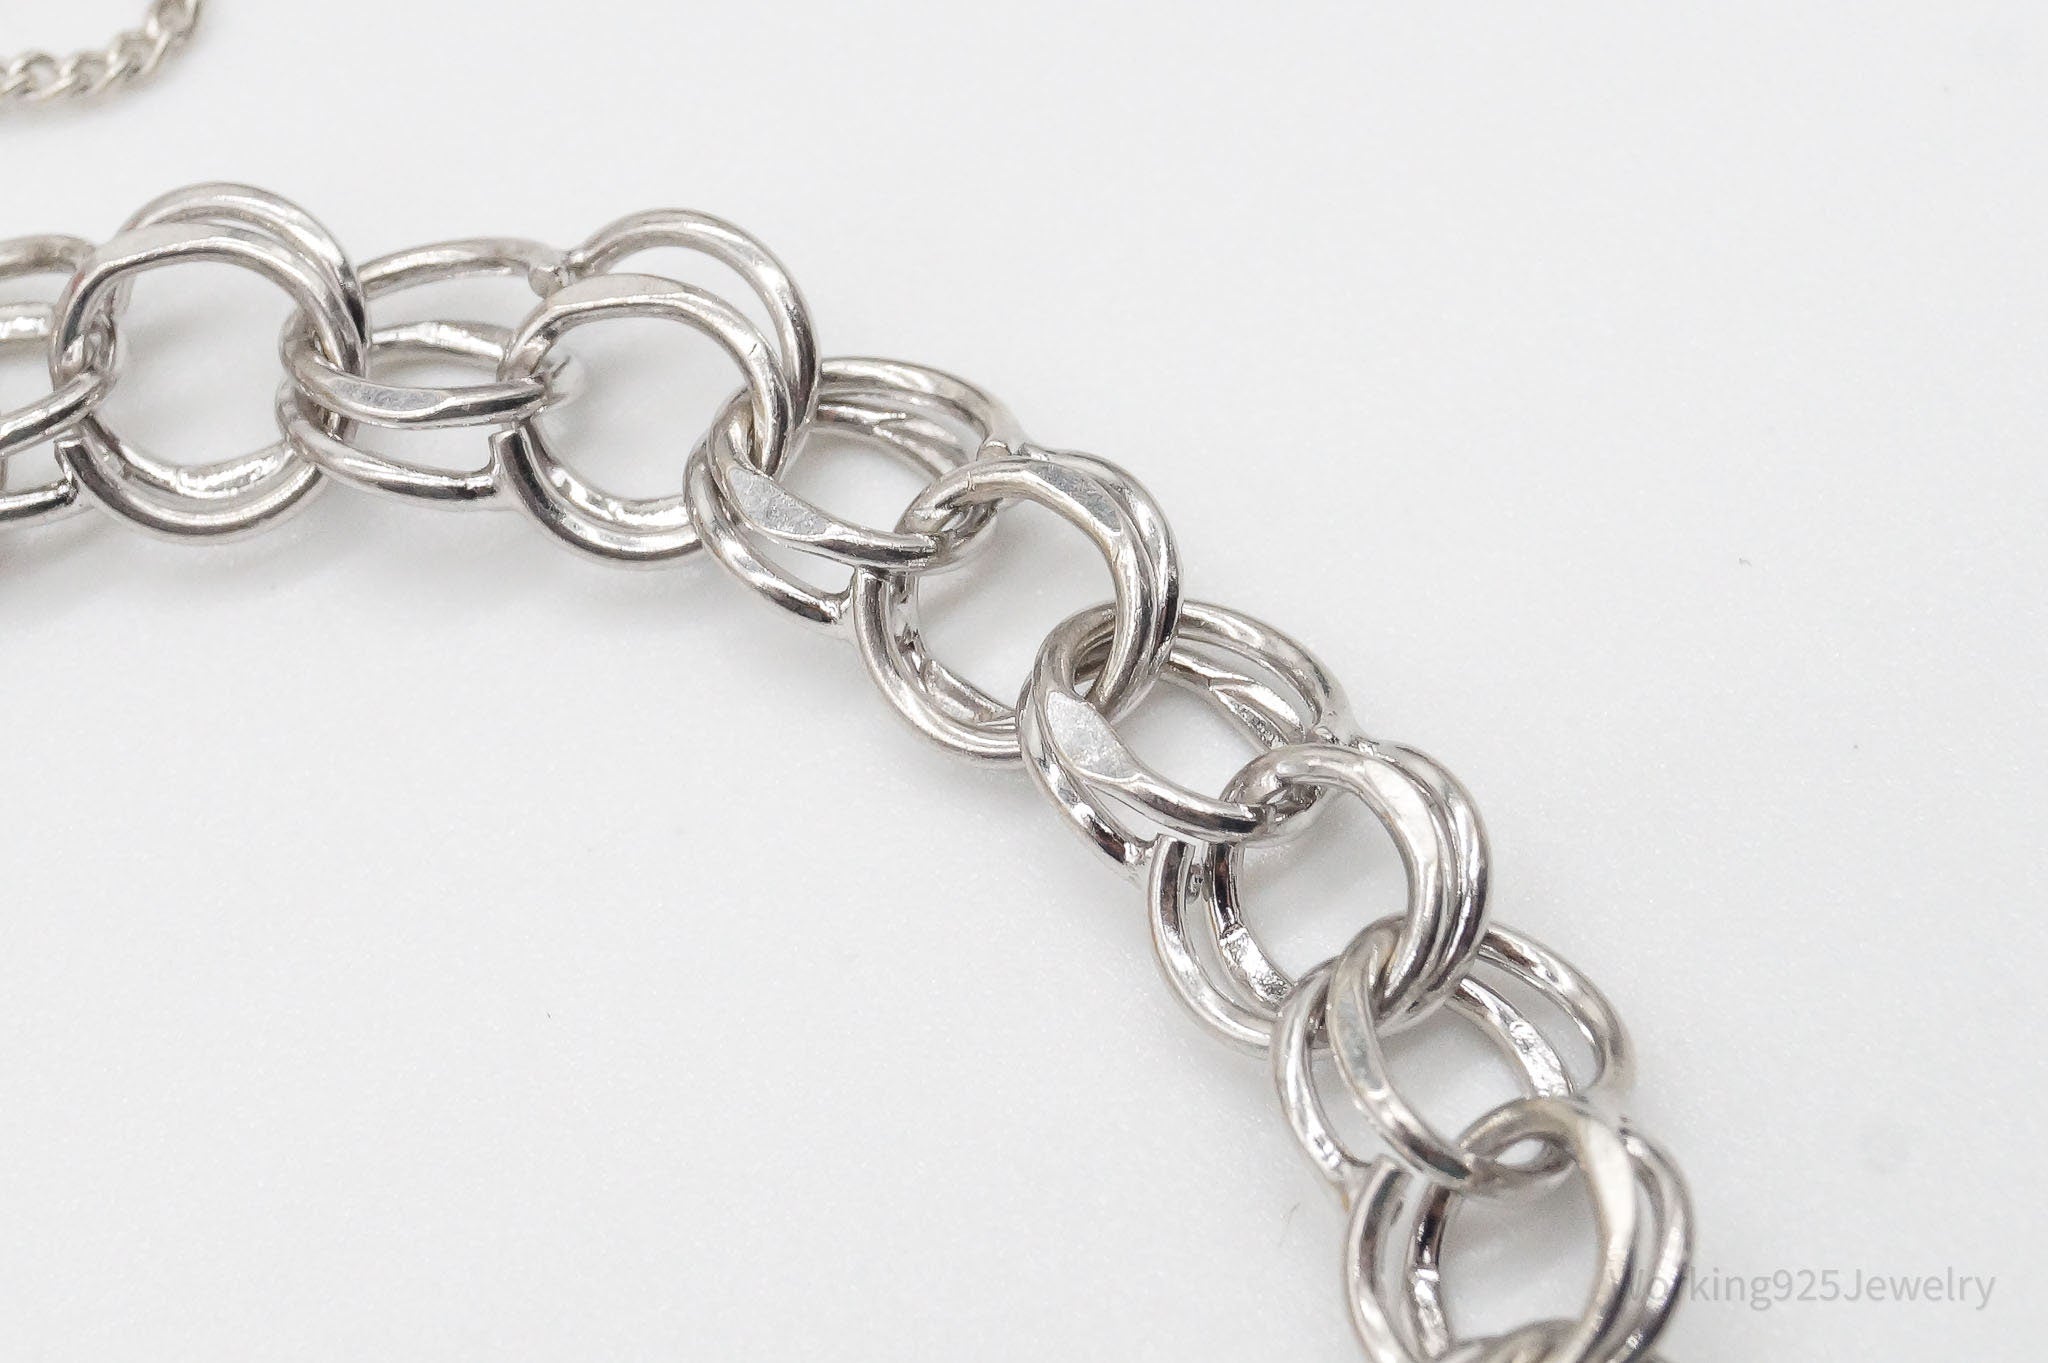 Vintage Sterling Silver Double Link Charm Bracelet